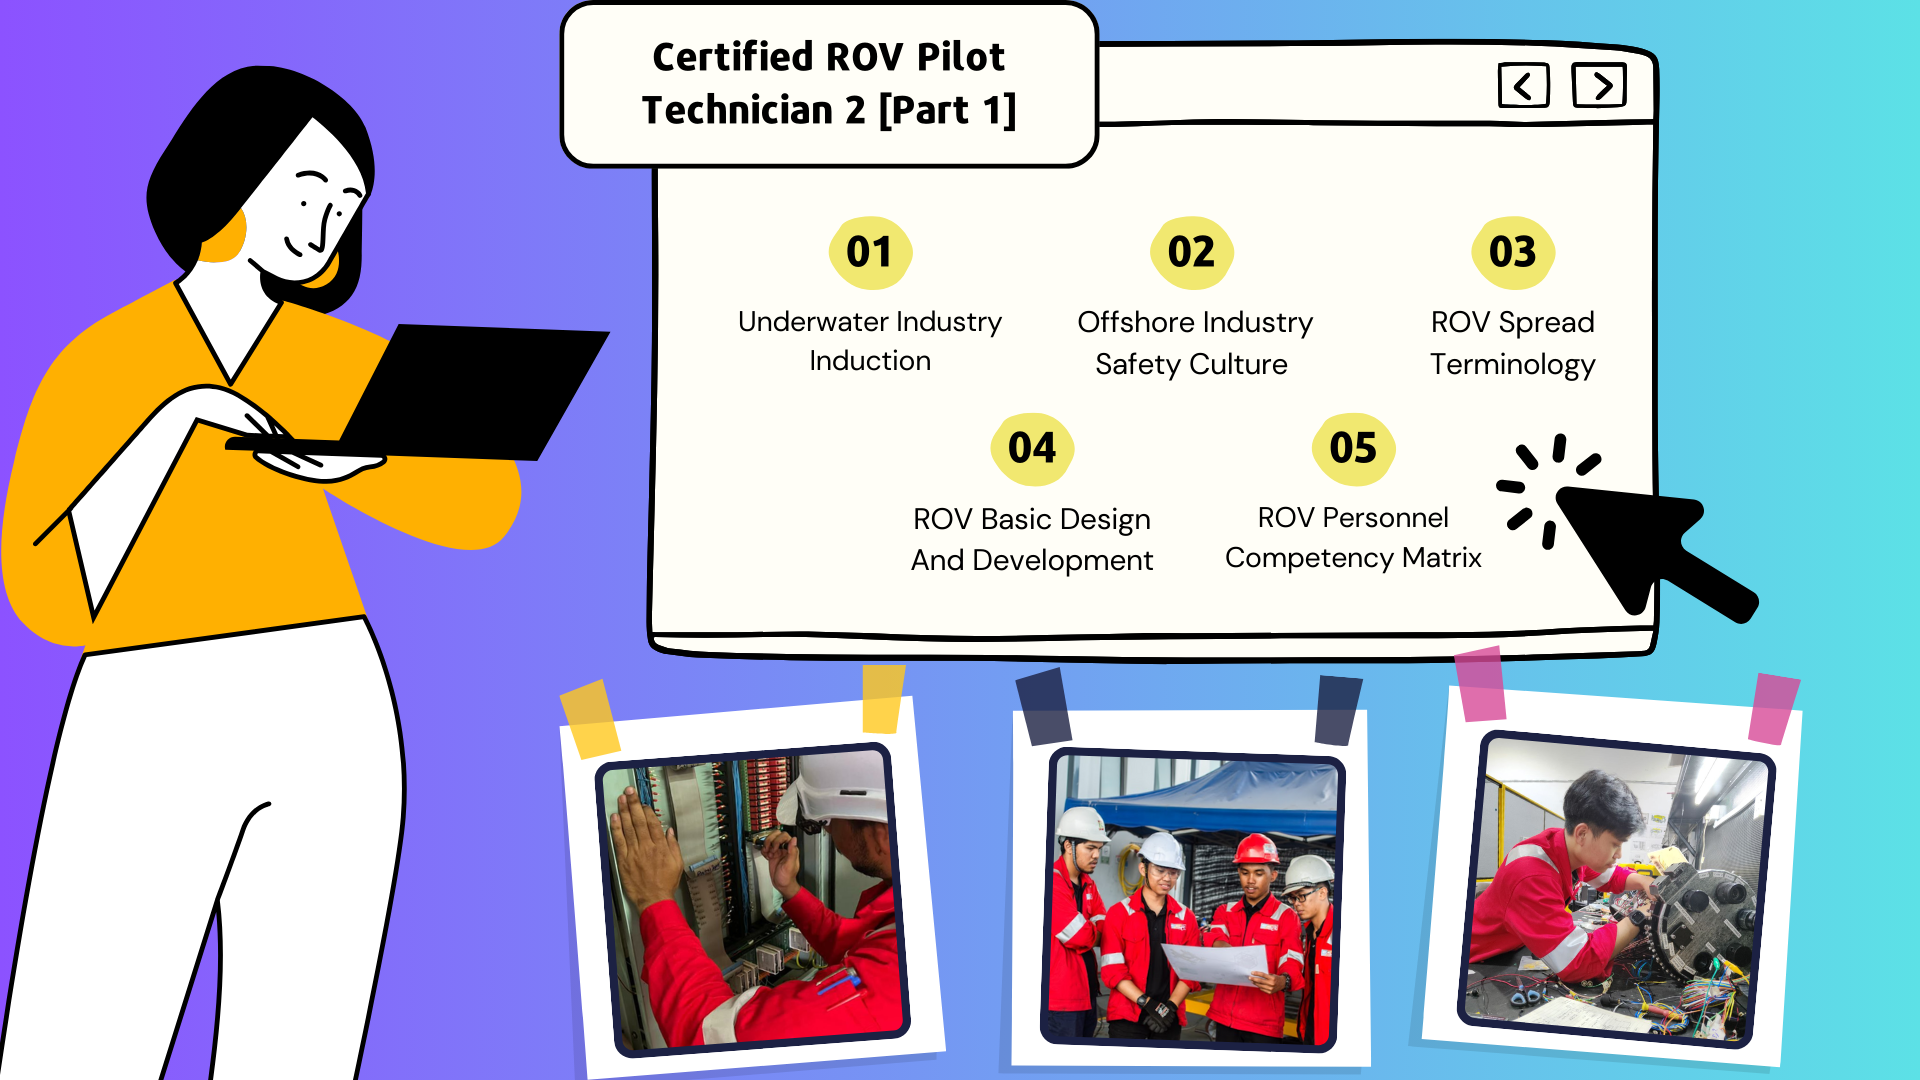 Certified ROV Pilot Technician 2 [Part 1]